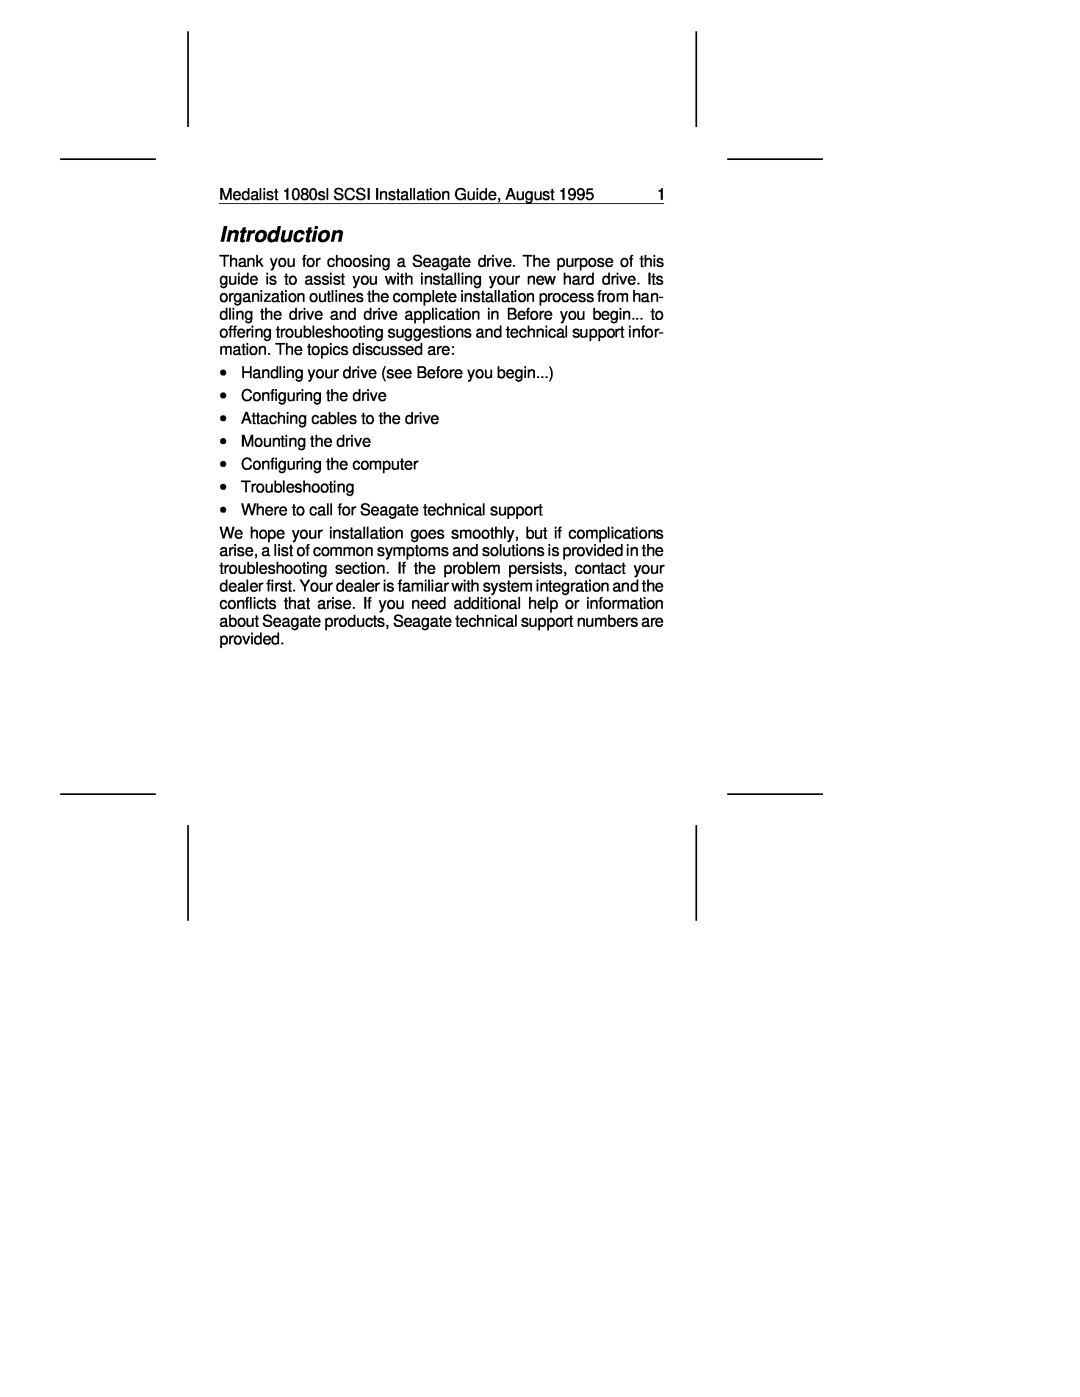 Seagate 1080SL manual Introduction 